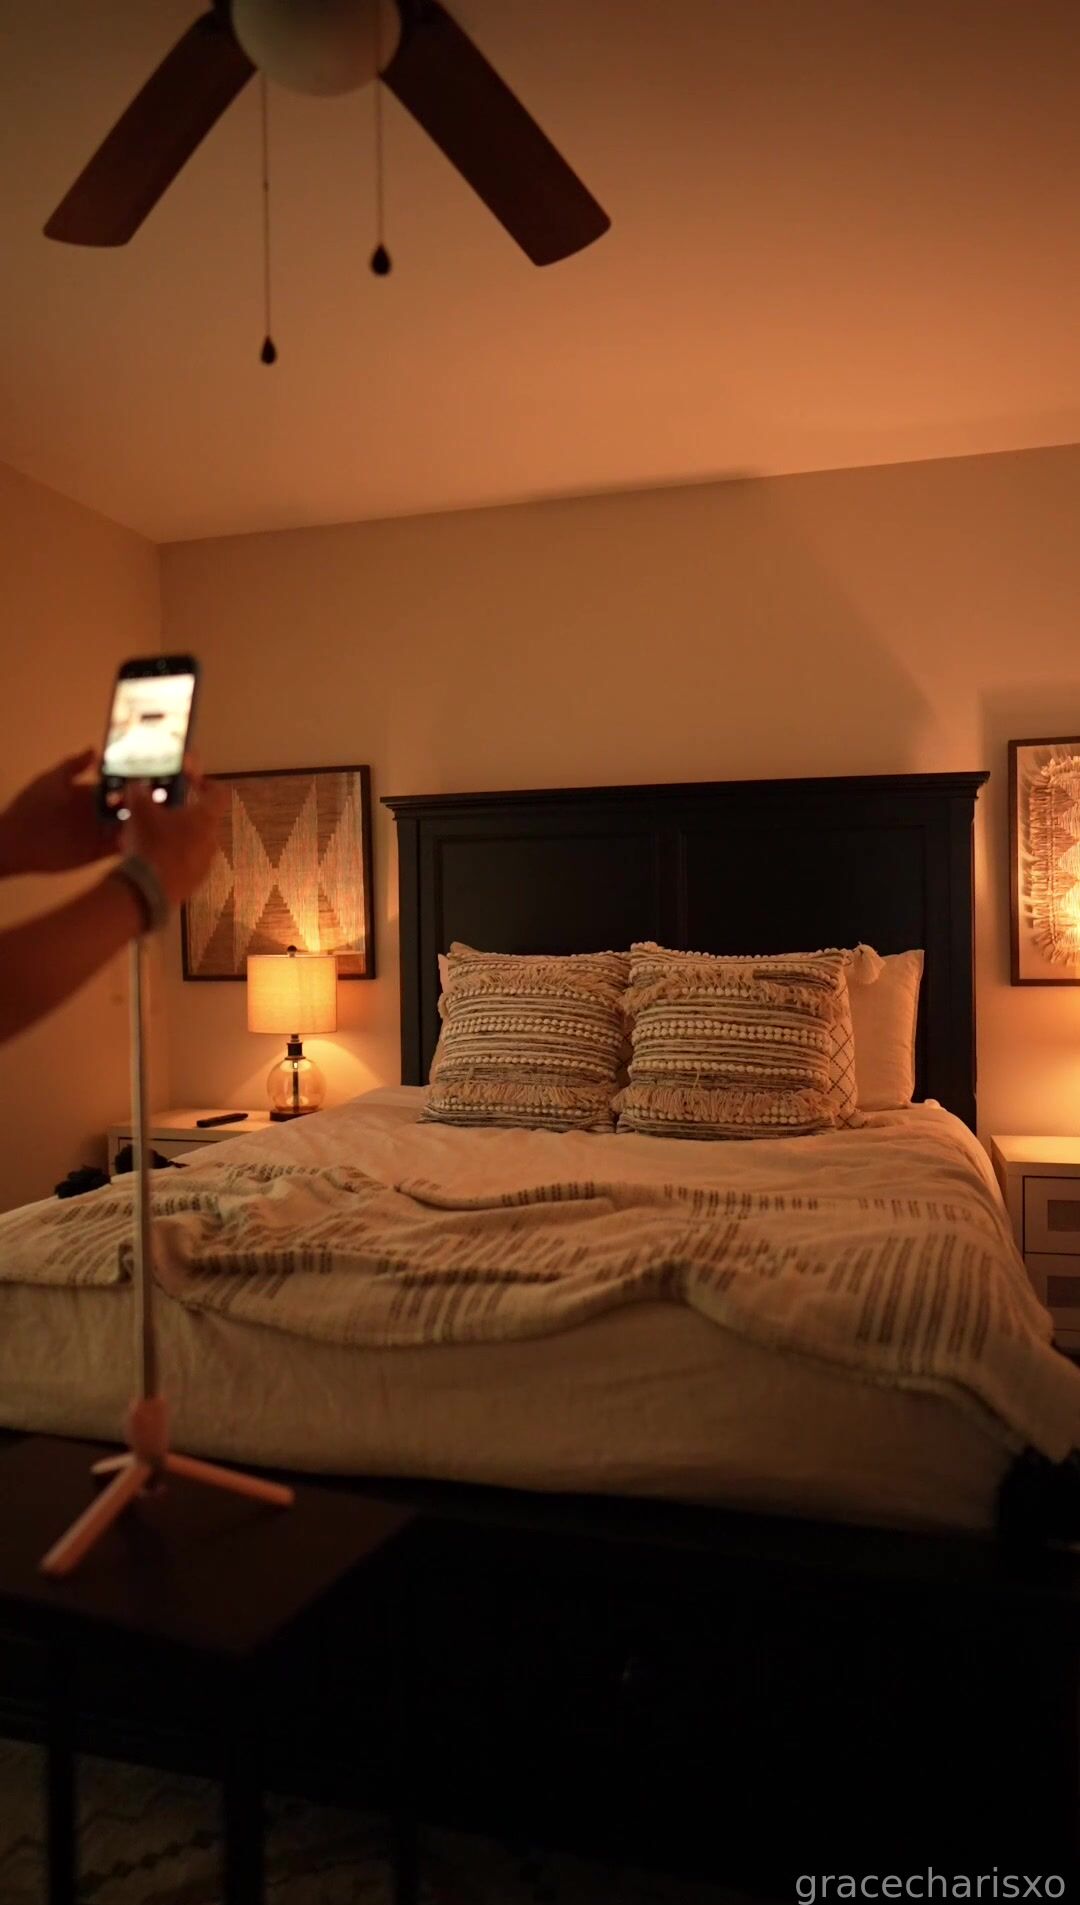 Grace Charis Selfie filming bedroom striptease